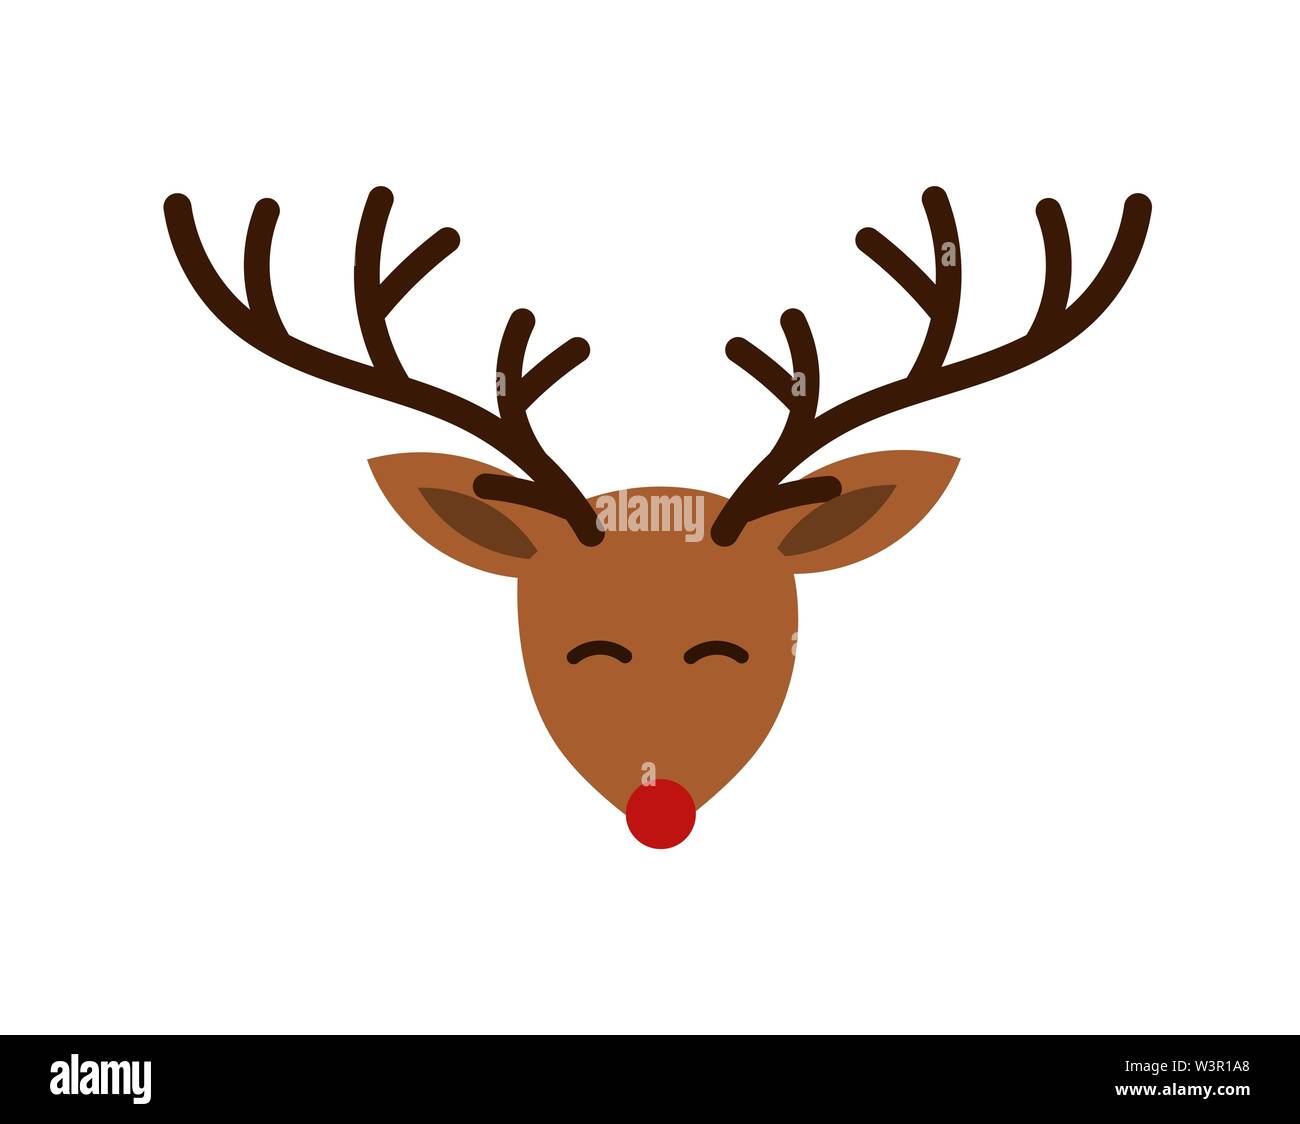 Natale Cartoon carino testa di renna con corna e naso rosso illustrazione  Immagine e Vettoriale - Alamy